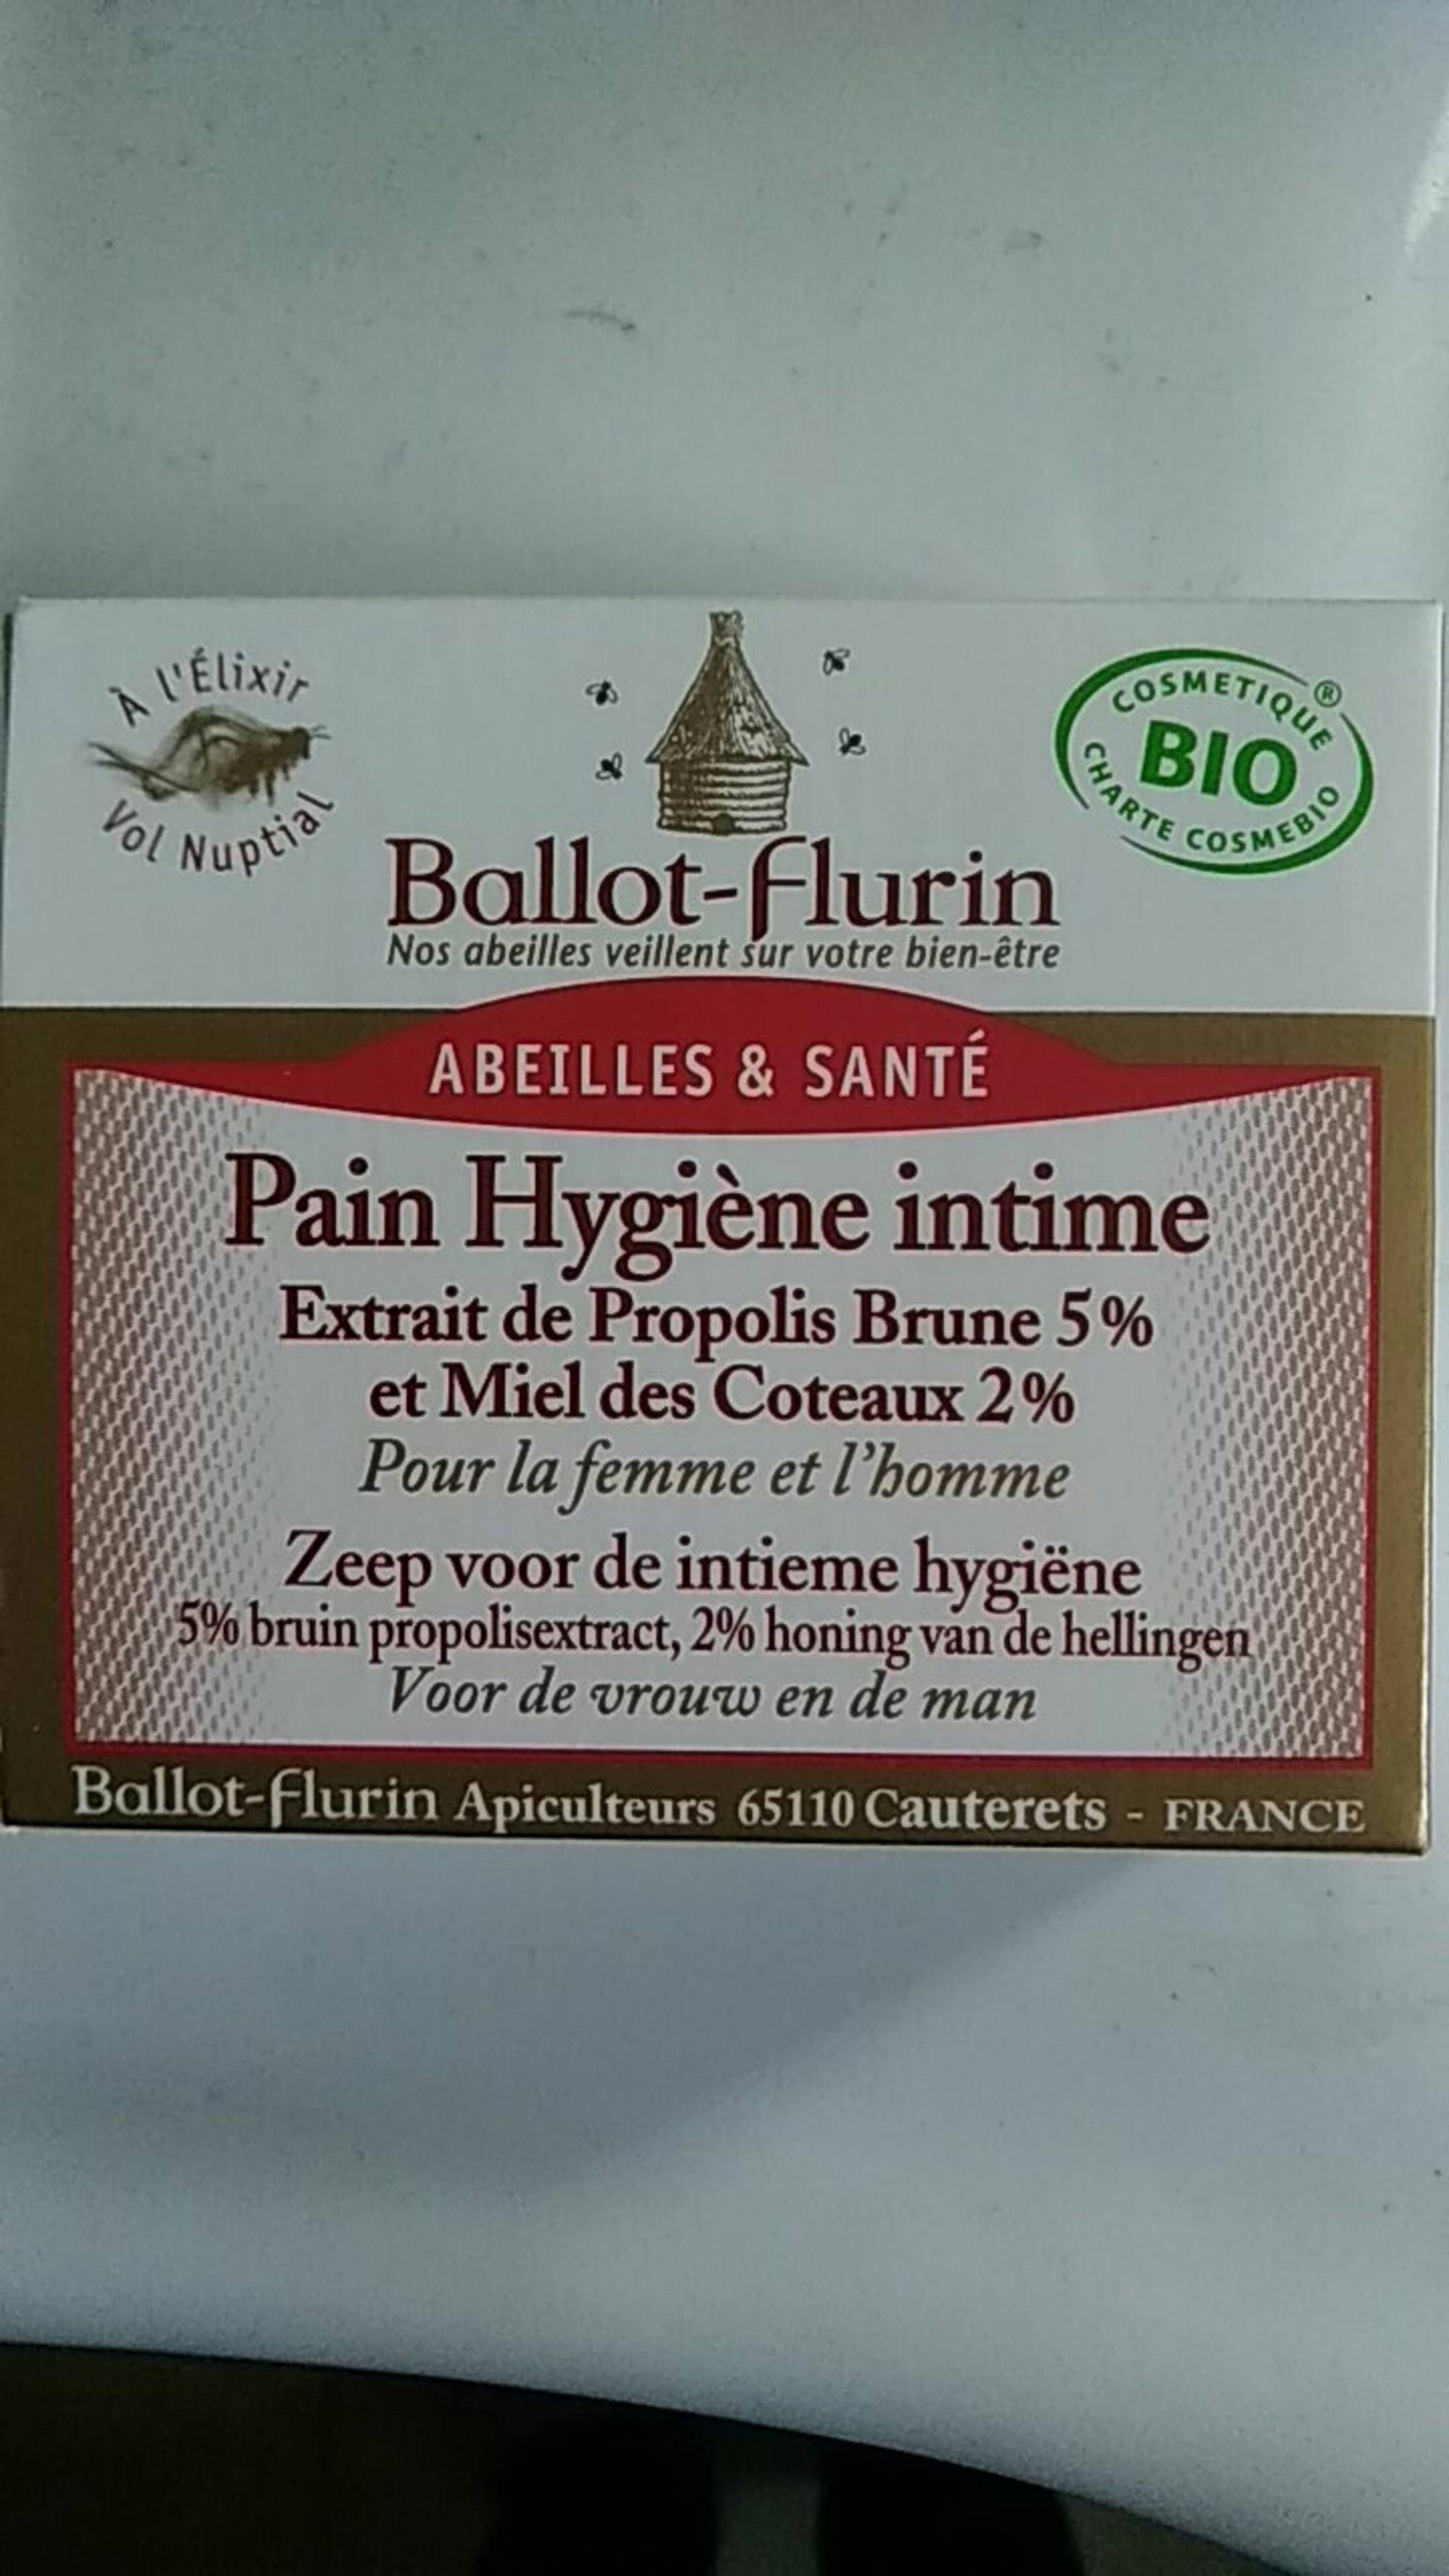 BALLOT-FLURIN - Abeilles & santé - Pain hygiène intime